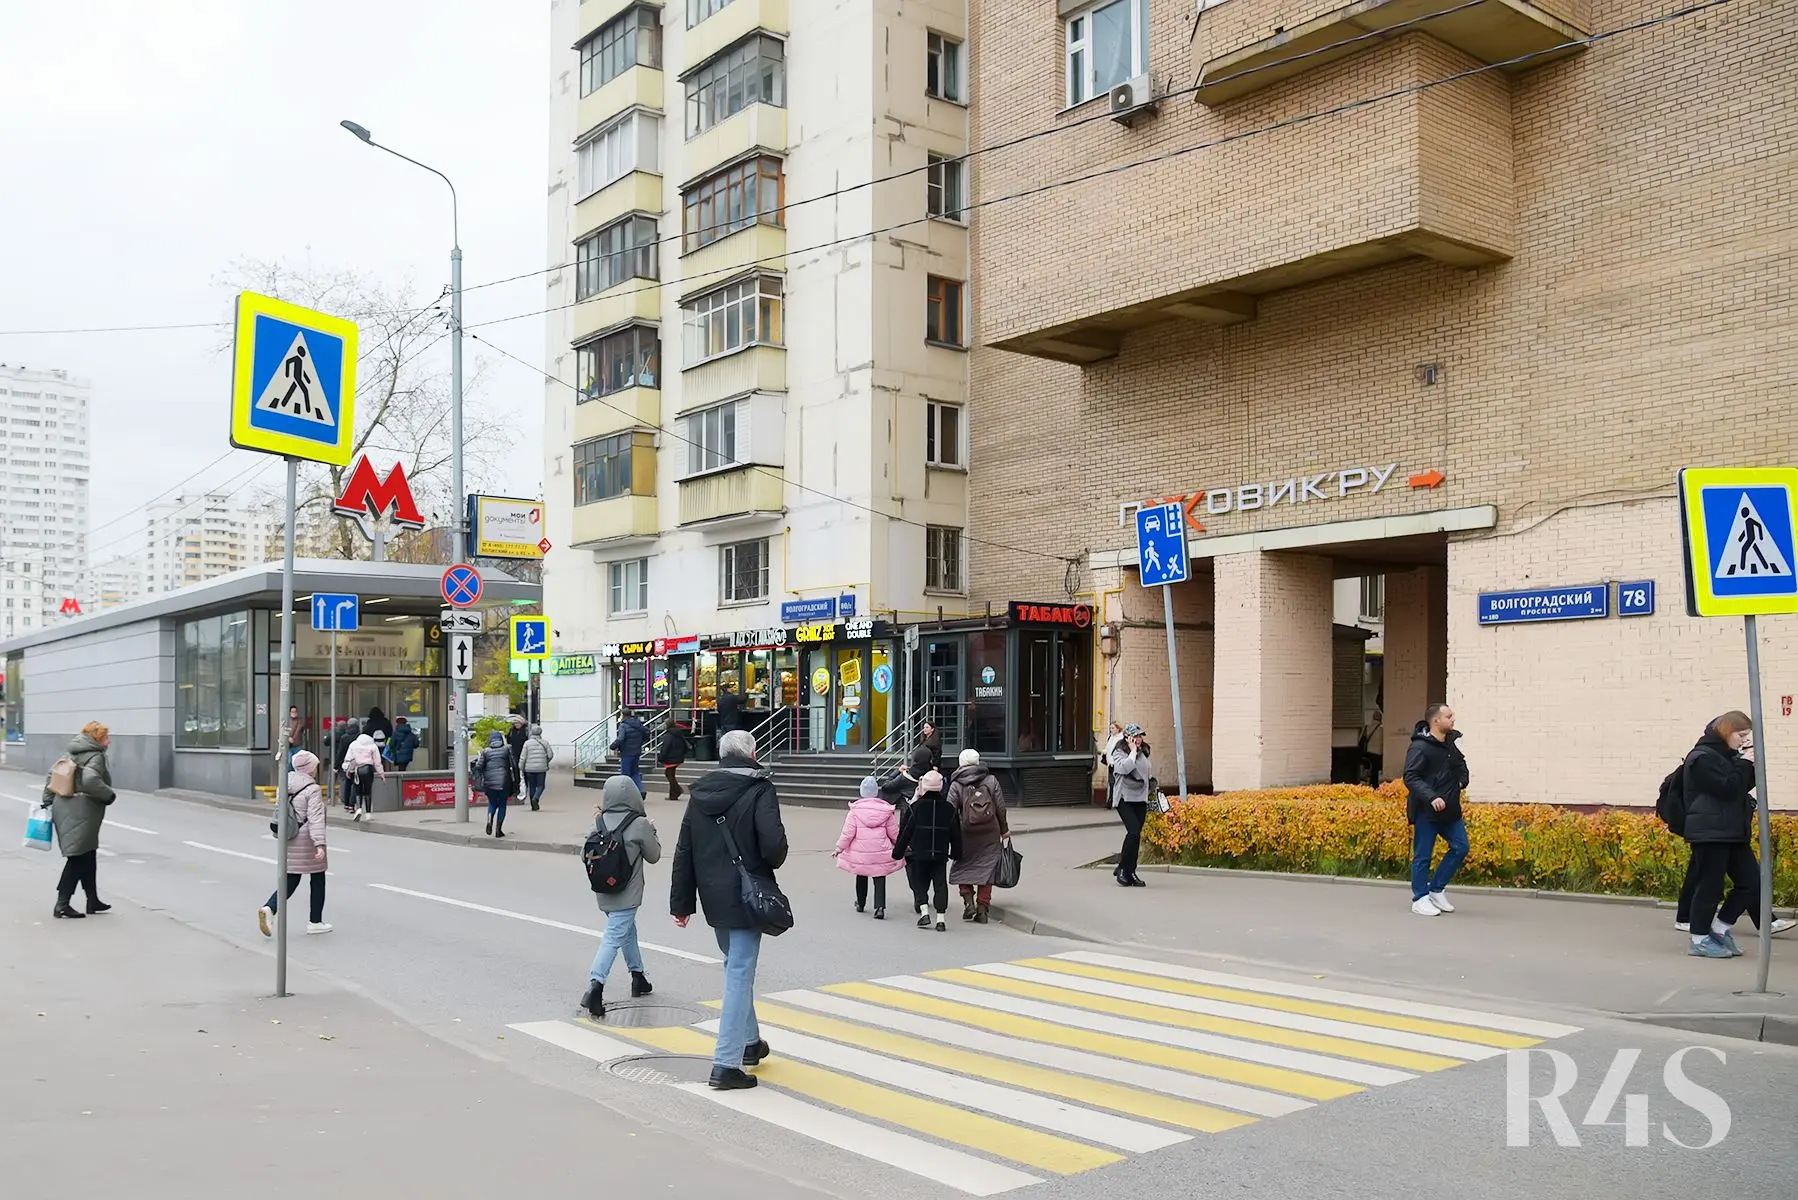 Аренда торгового помещения площадью 55.4 м2 в Москве: Волгоградский проспект, 80/2к1 R4S | Realty4Sale